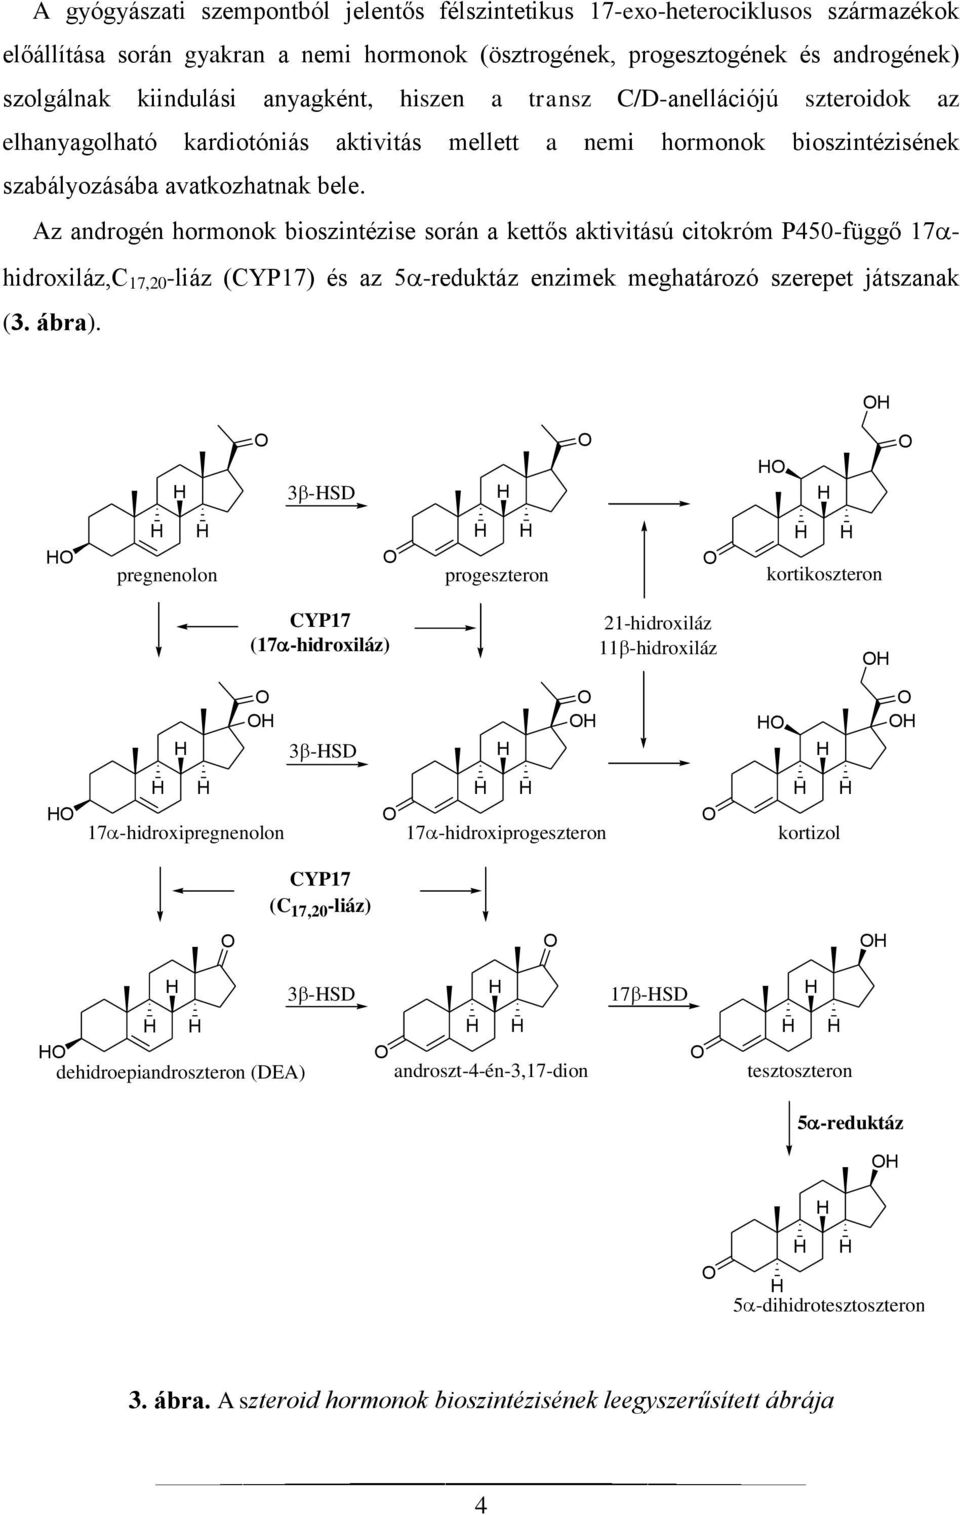 Az androgén hormonok bioszintézise során a kettős aktivitású citokróm P450-függő 17 hidroxiláz,c 17,20 -liáz (CYP17) és az 5 -reduktáz enzimek meghatározó szerepet játszanak (3. ábra).